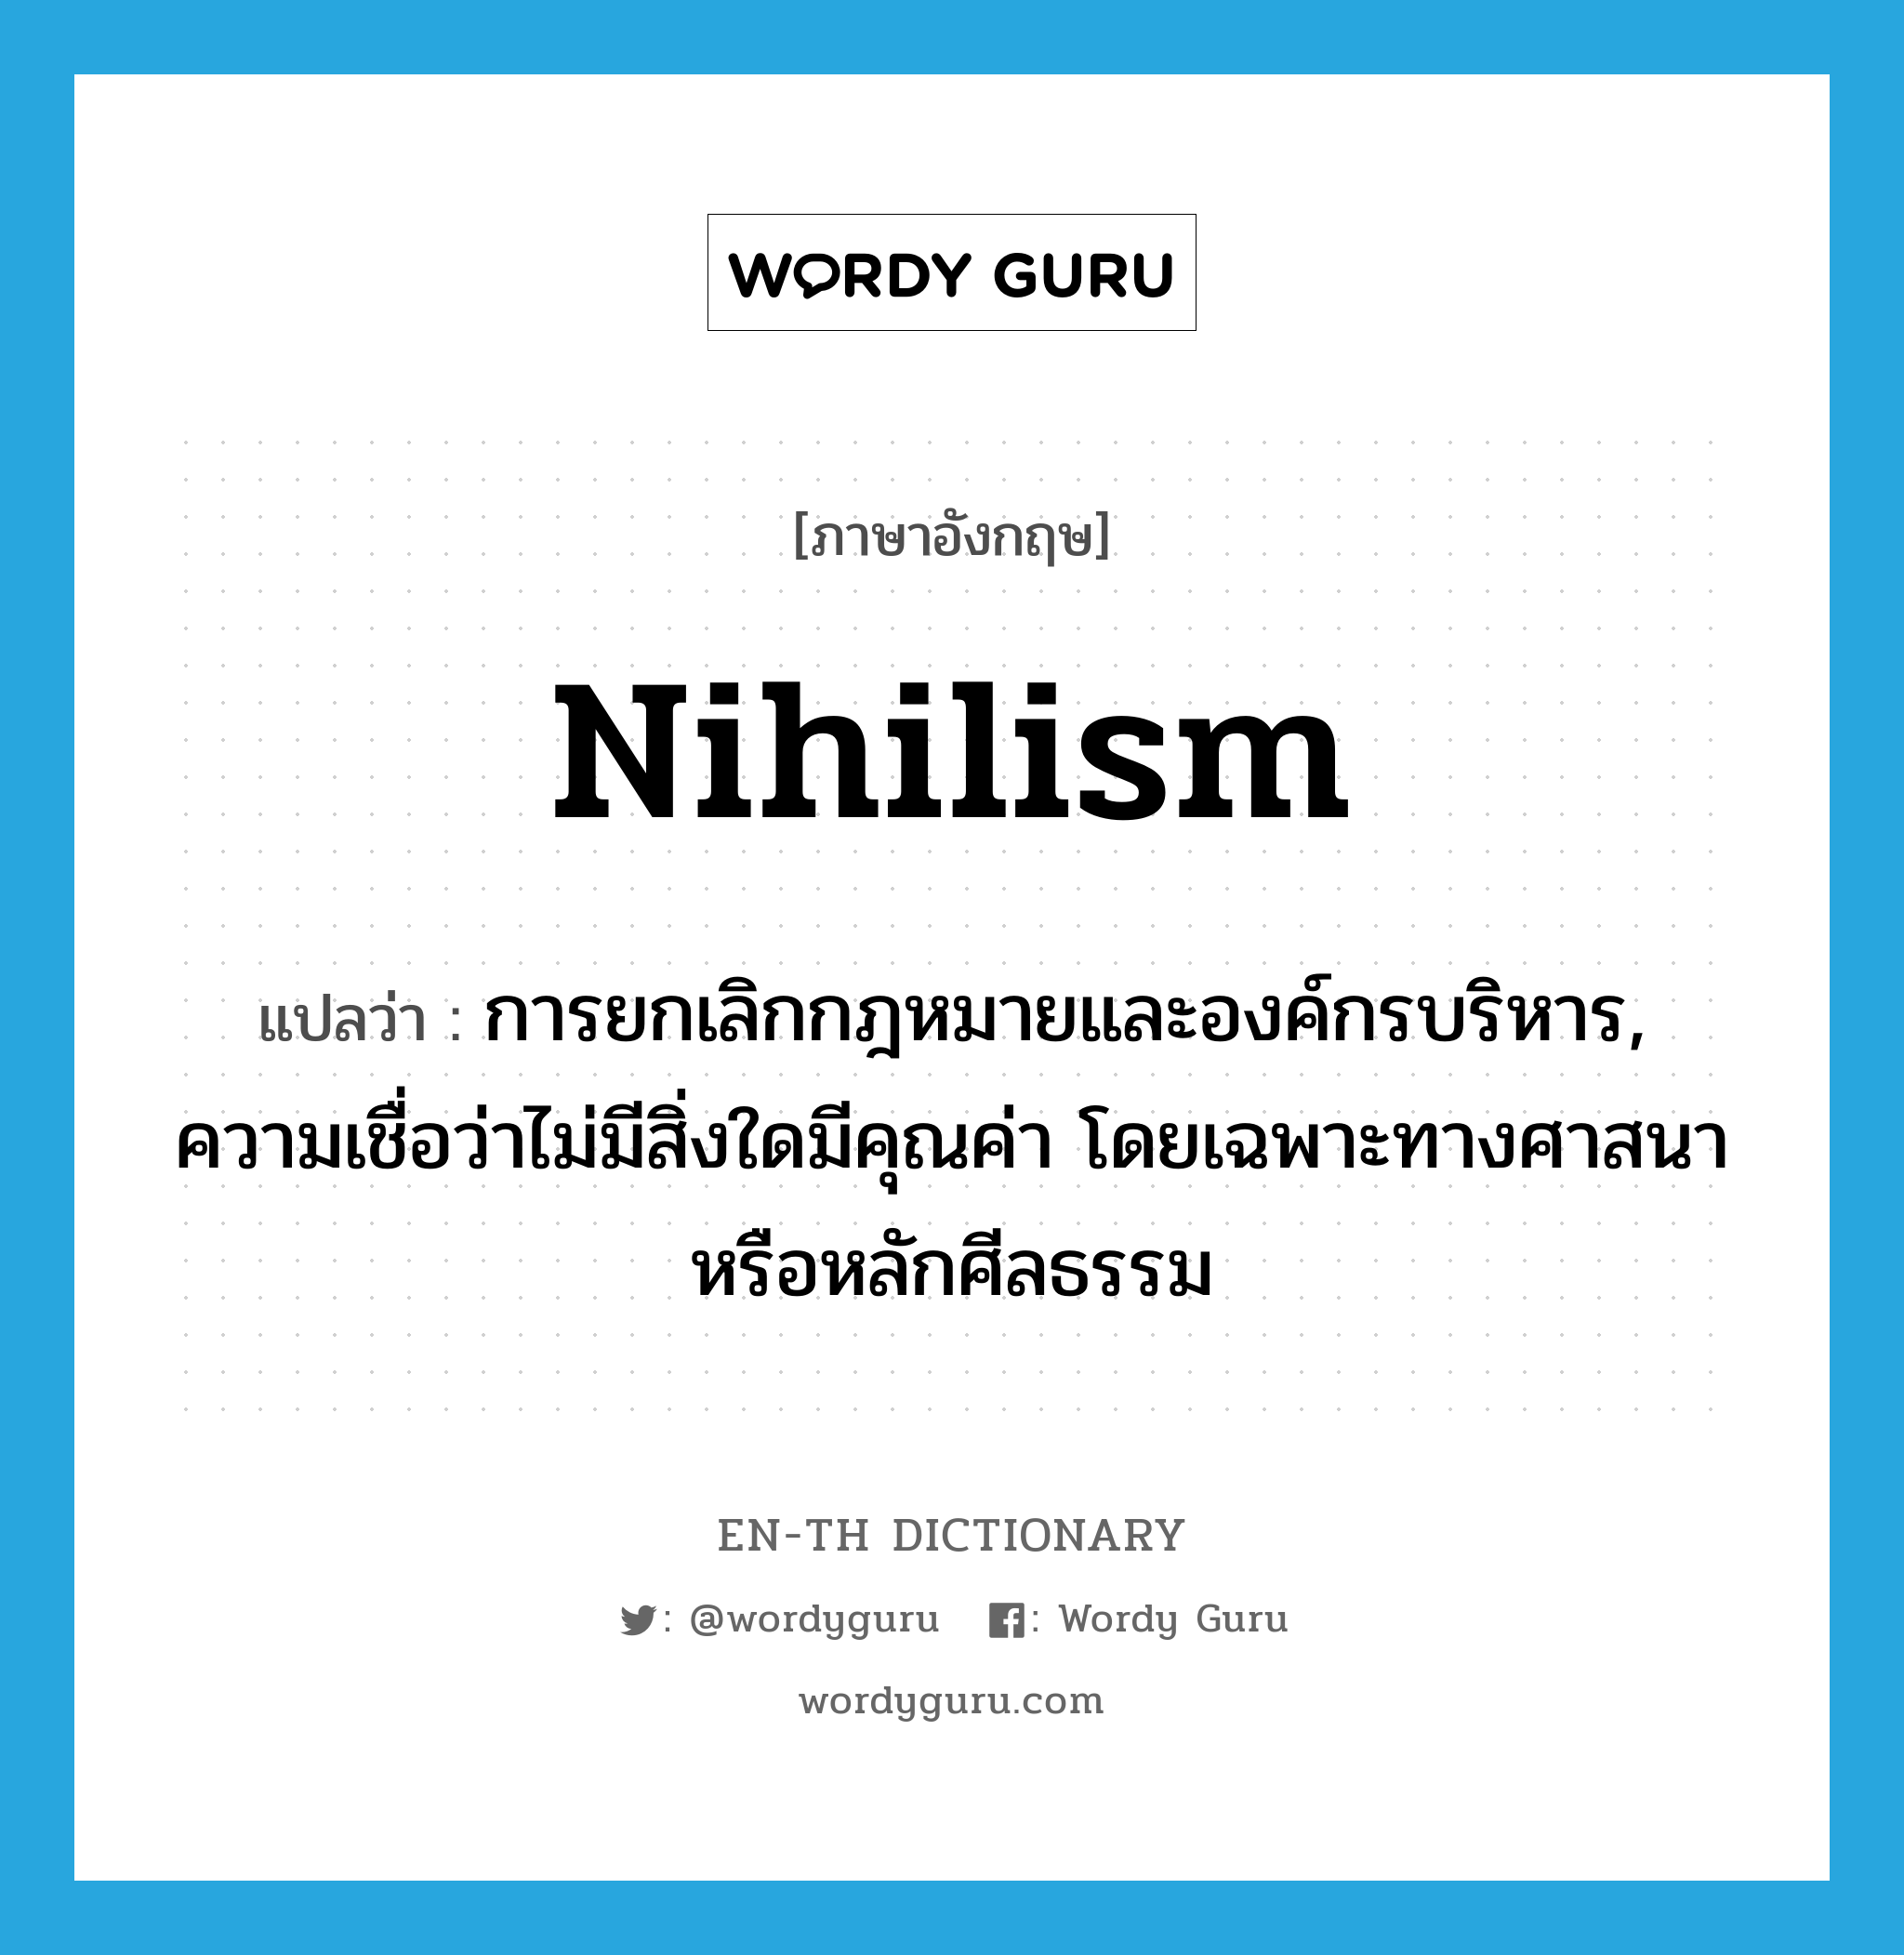 nihilism แปลว่า?, คำศัพท์ภาษาอังกฤษ nihilism แปลว่า การยกเลิกกฎหมายและองค์กรบริหาร, ความเชื่อว่าไม่มีสิ่งใดมีคุณค่า โดยเฉพาะทางศาสนาหรือหลักศีลธรรม ประเภท N หมวด N